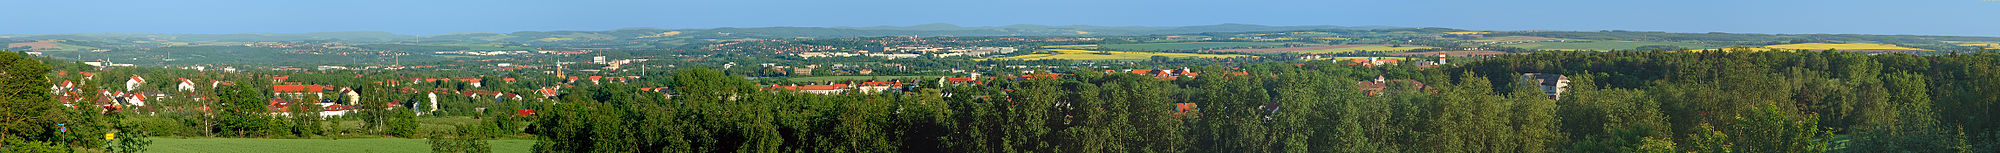 Panorama-Aufnahme des südöstlichen Teils von Zwickau, am Horizont der Höhenzug des Westerzgebirges